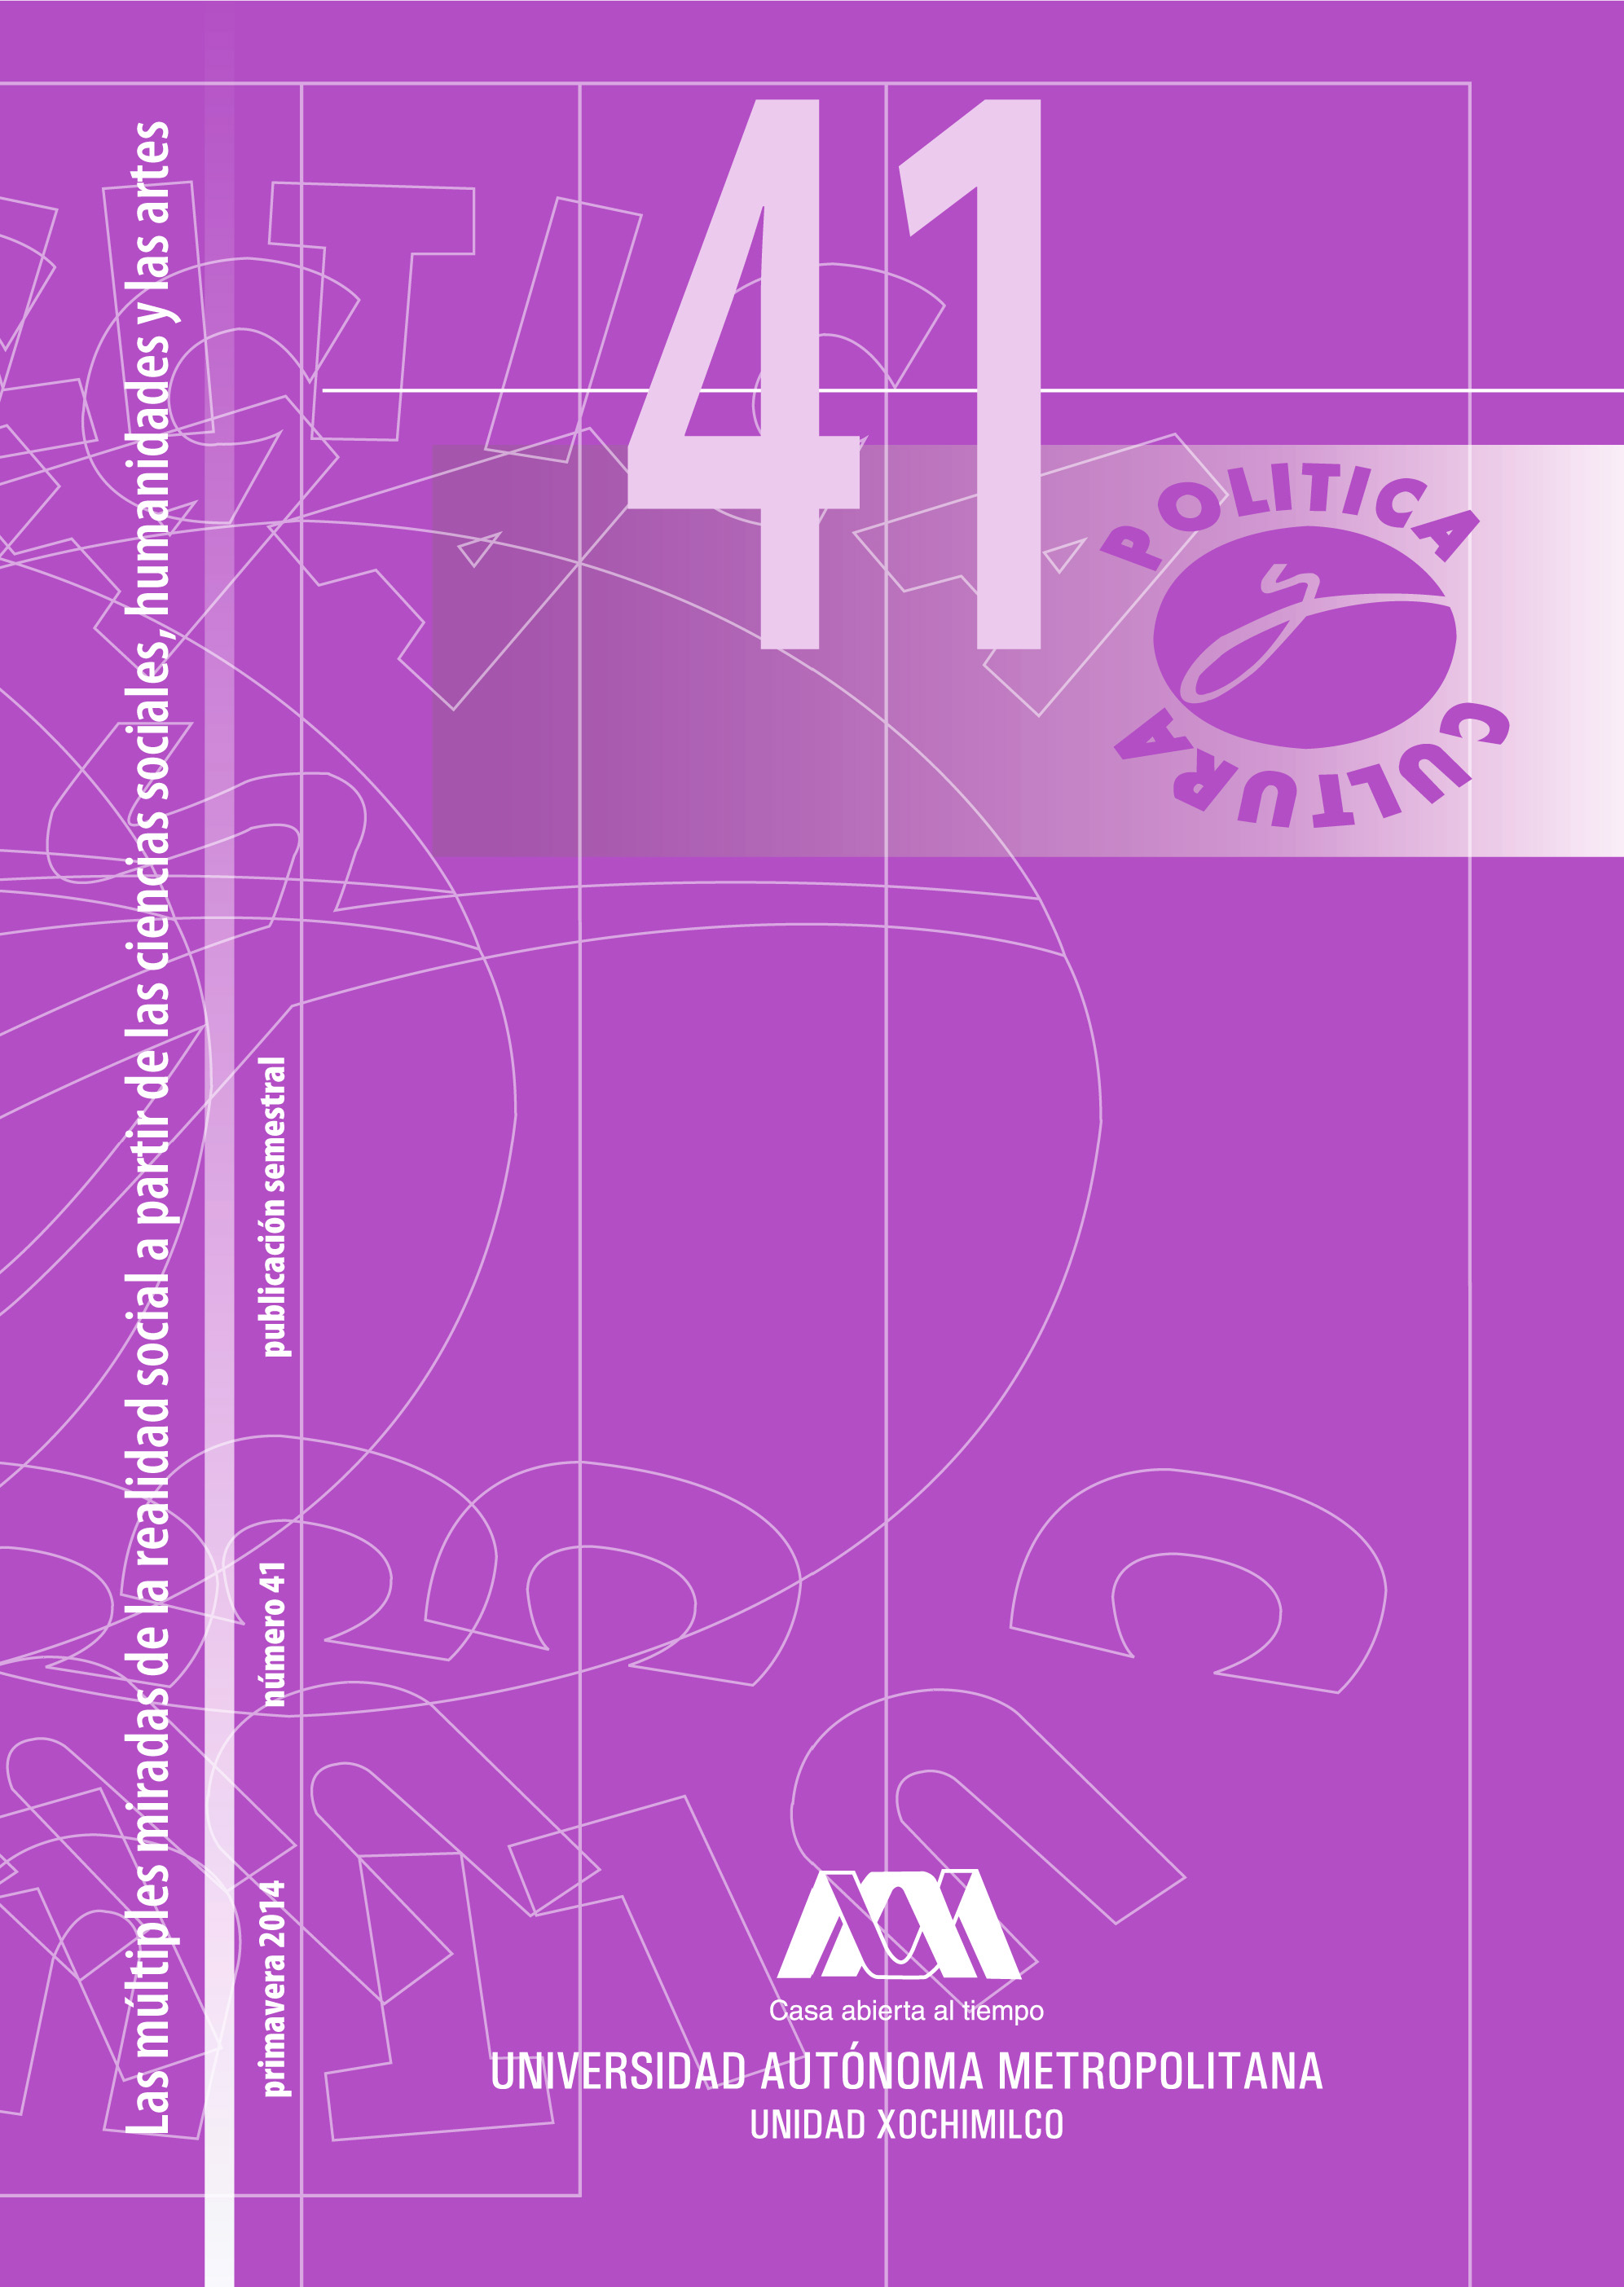 					Ver Núm. 41 (2014): No. 41: Las múltiples miradas de la realidad social a partir de las ciencias sociales, humanidades y las artes
				